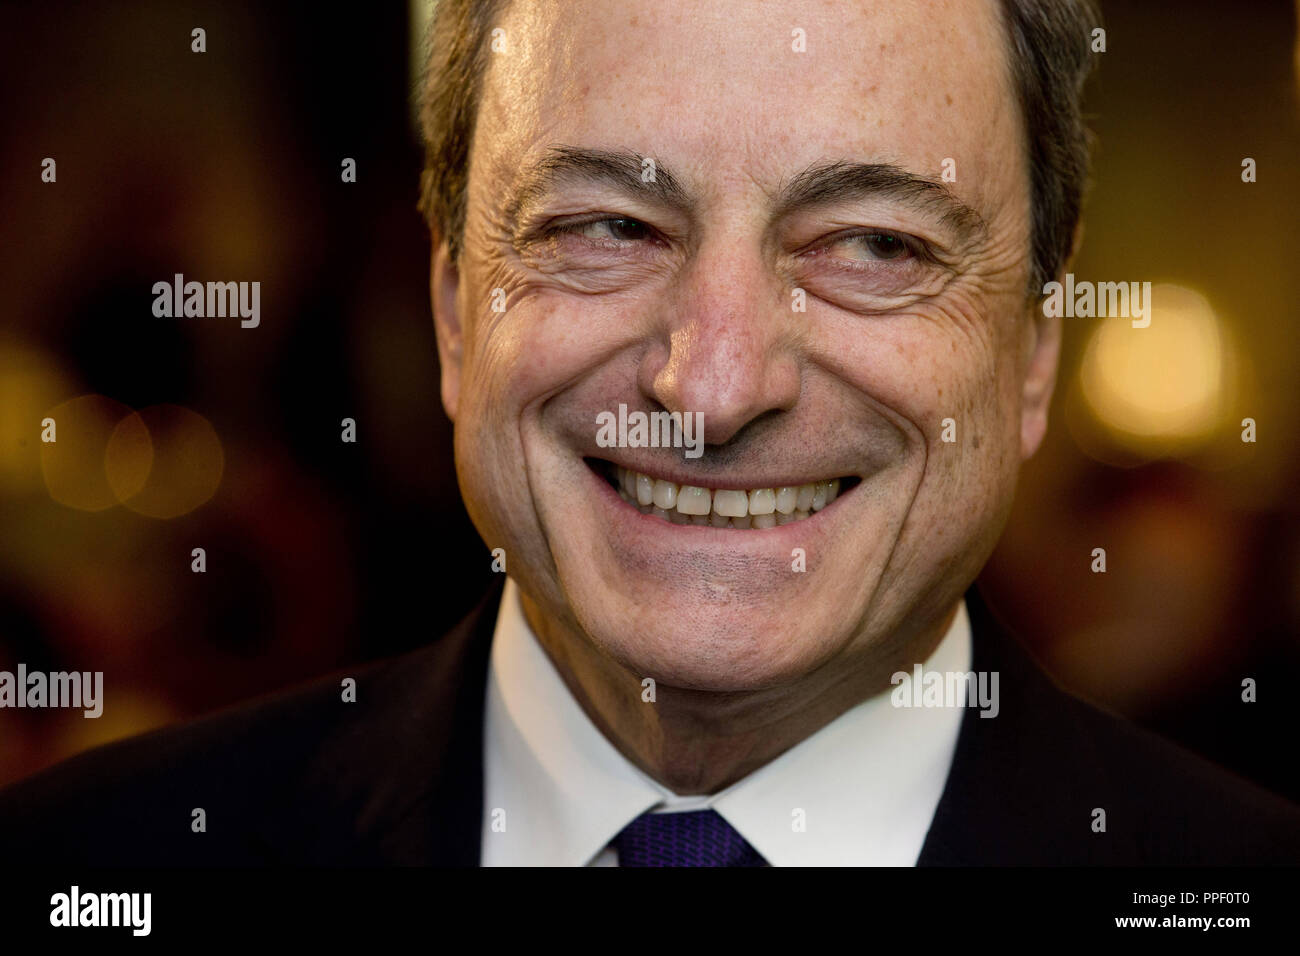 Mario Draghi, Président de la Banque centrale européenne (BCE), sur les finances Jour de la Sueddeutsche Zeitung à Frankfurt am Main. Banque D'Images